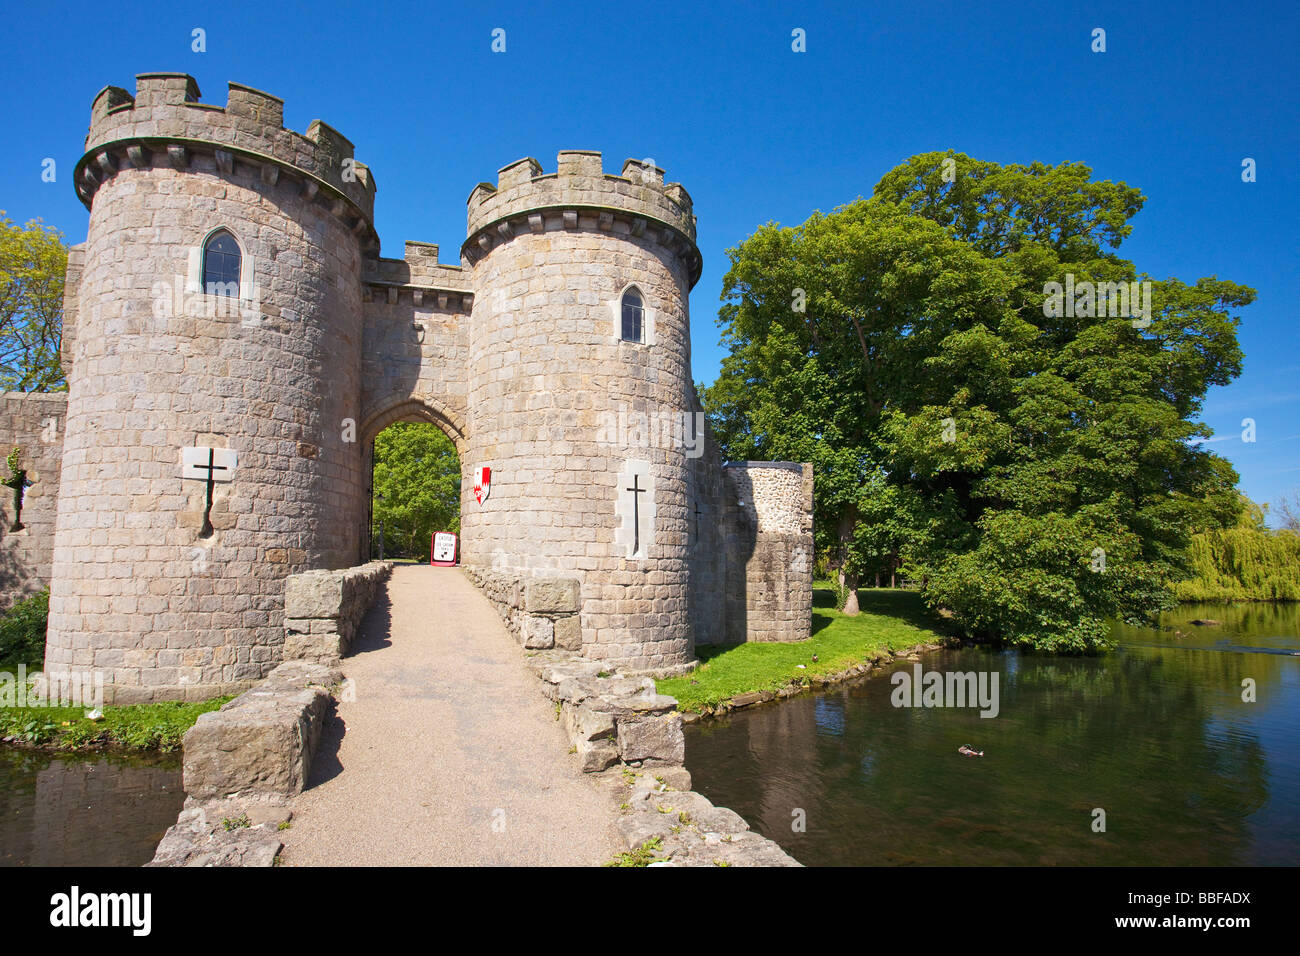 Whittington douves du château près de Shropshire Oswestry England UK Royaume-Uni GB Grande-bretagne Îles britanniques Europe Banque D'Images